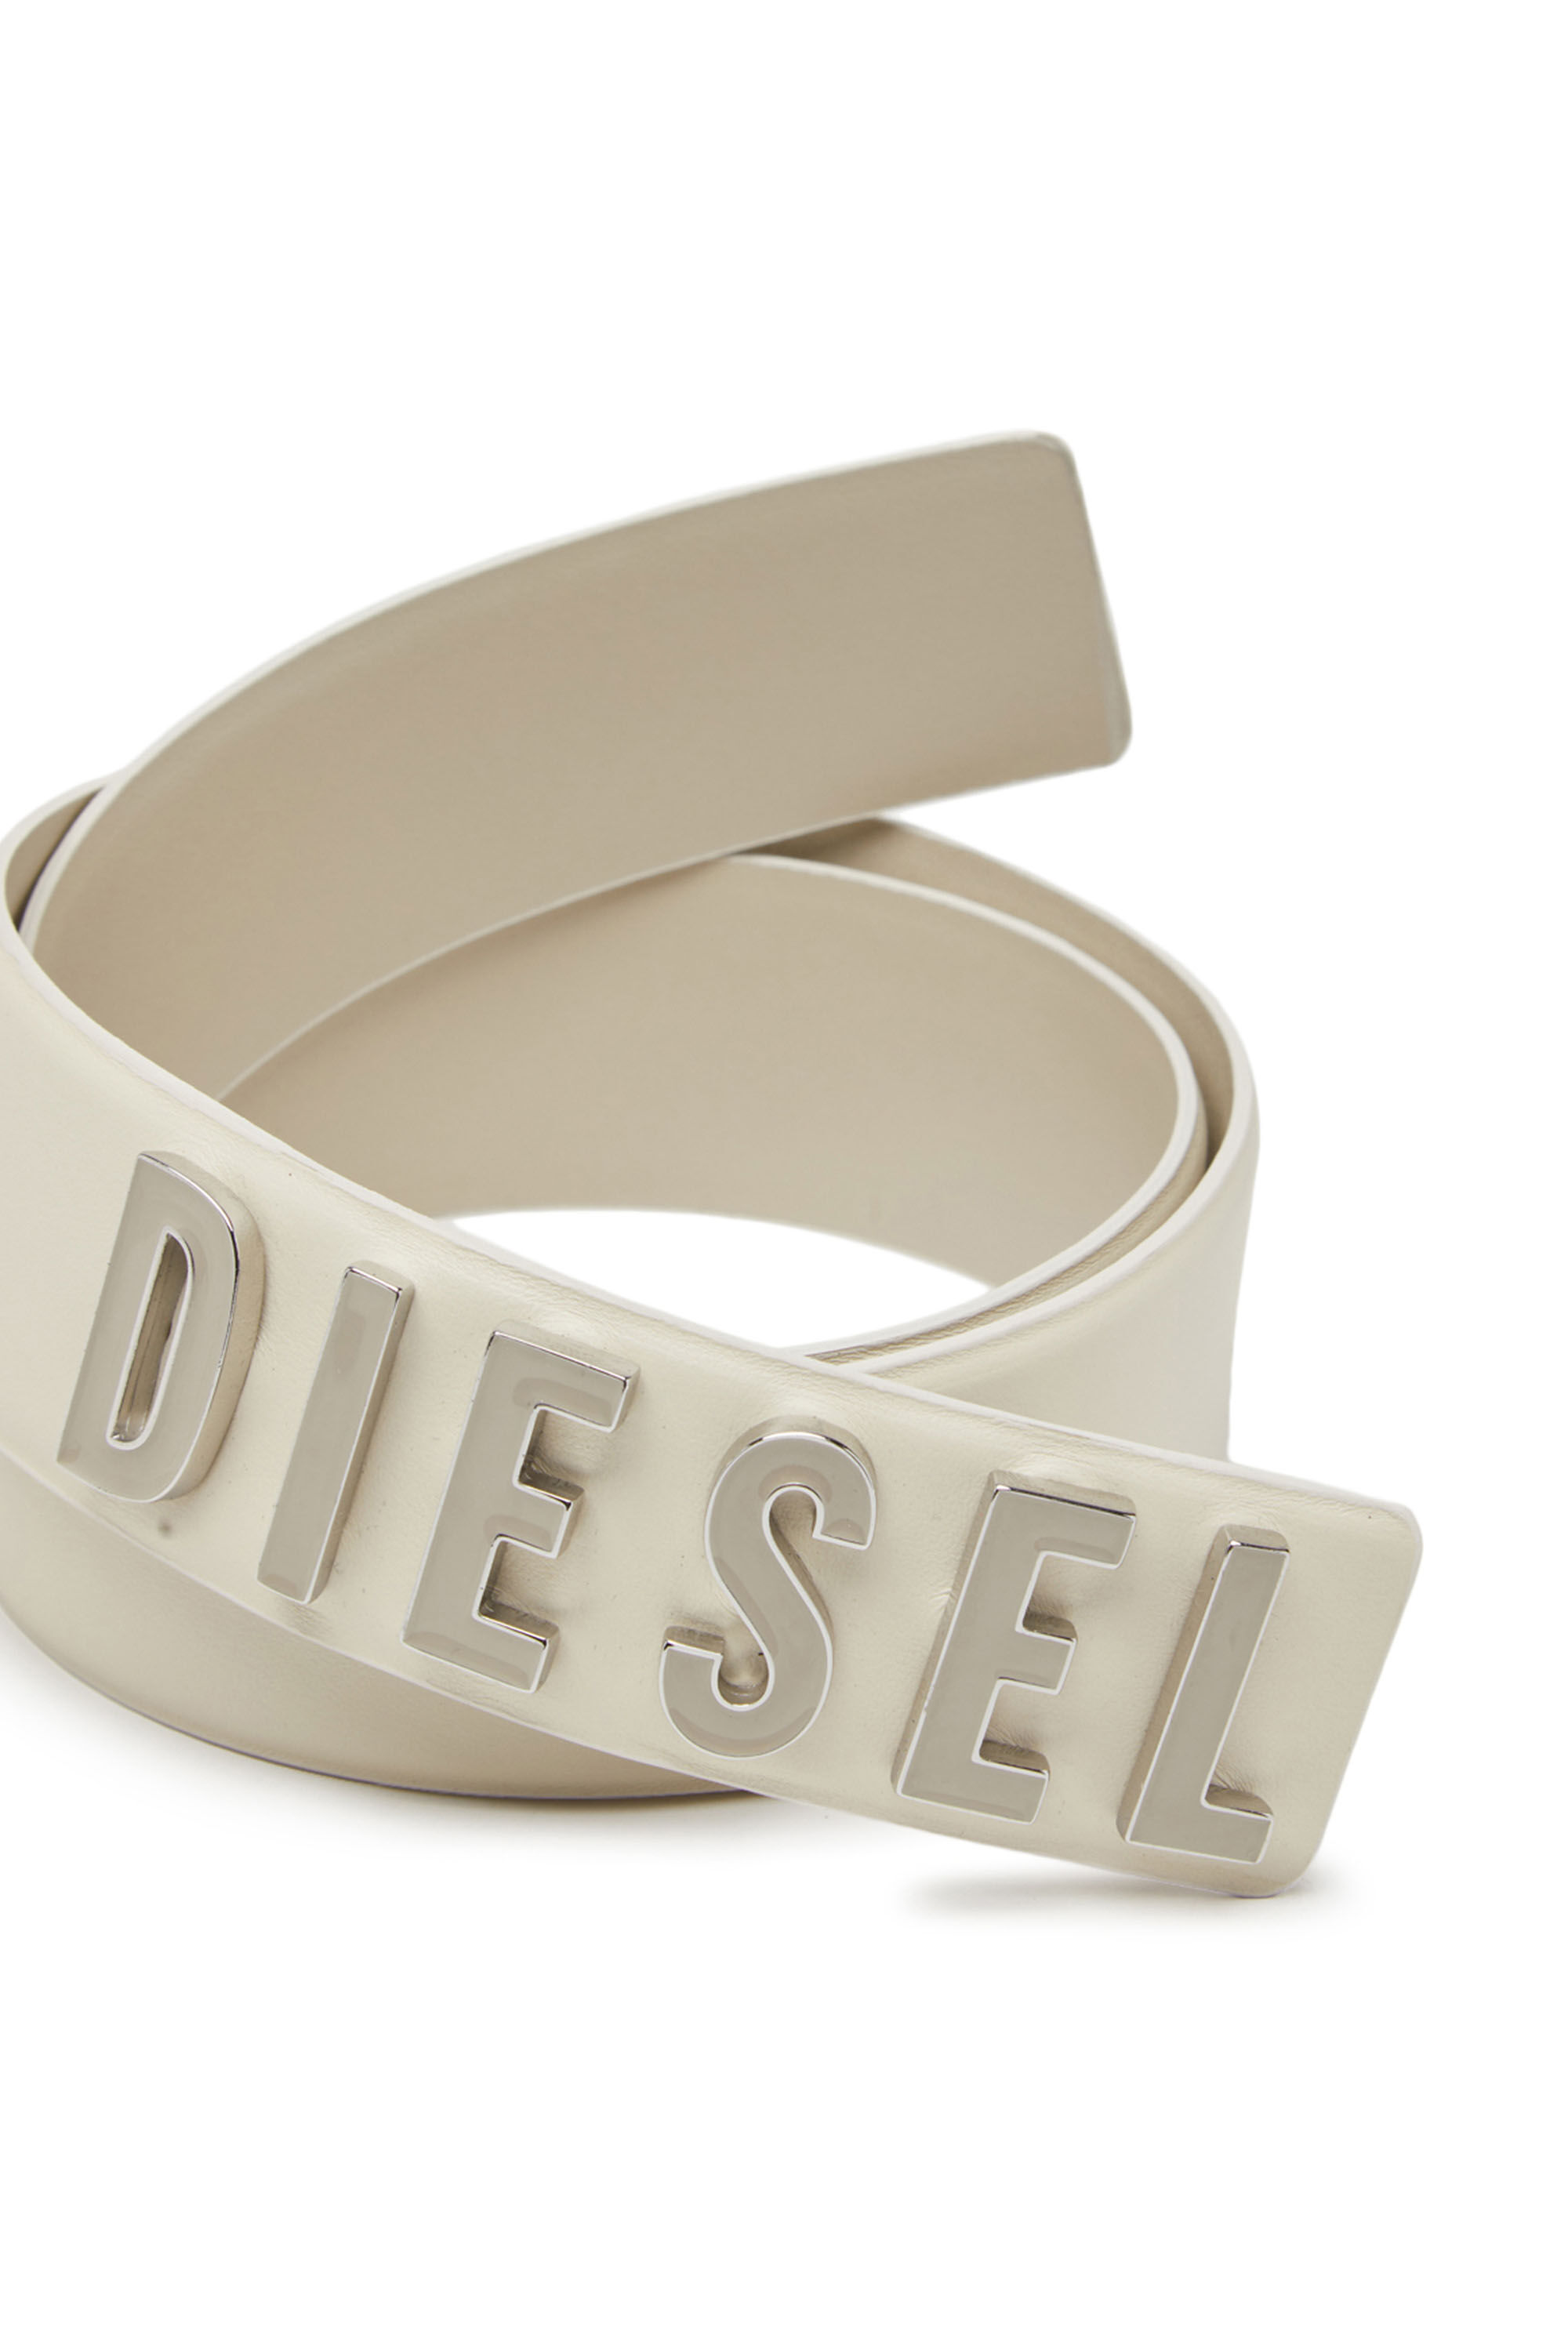 Diesel - B-LETTERS B, Weiß - Image 3